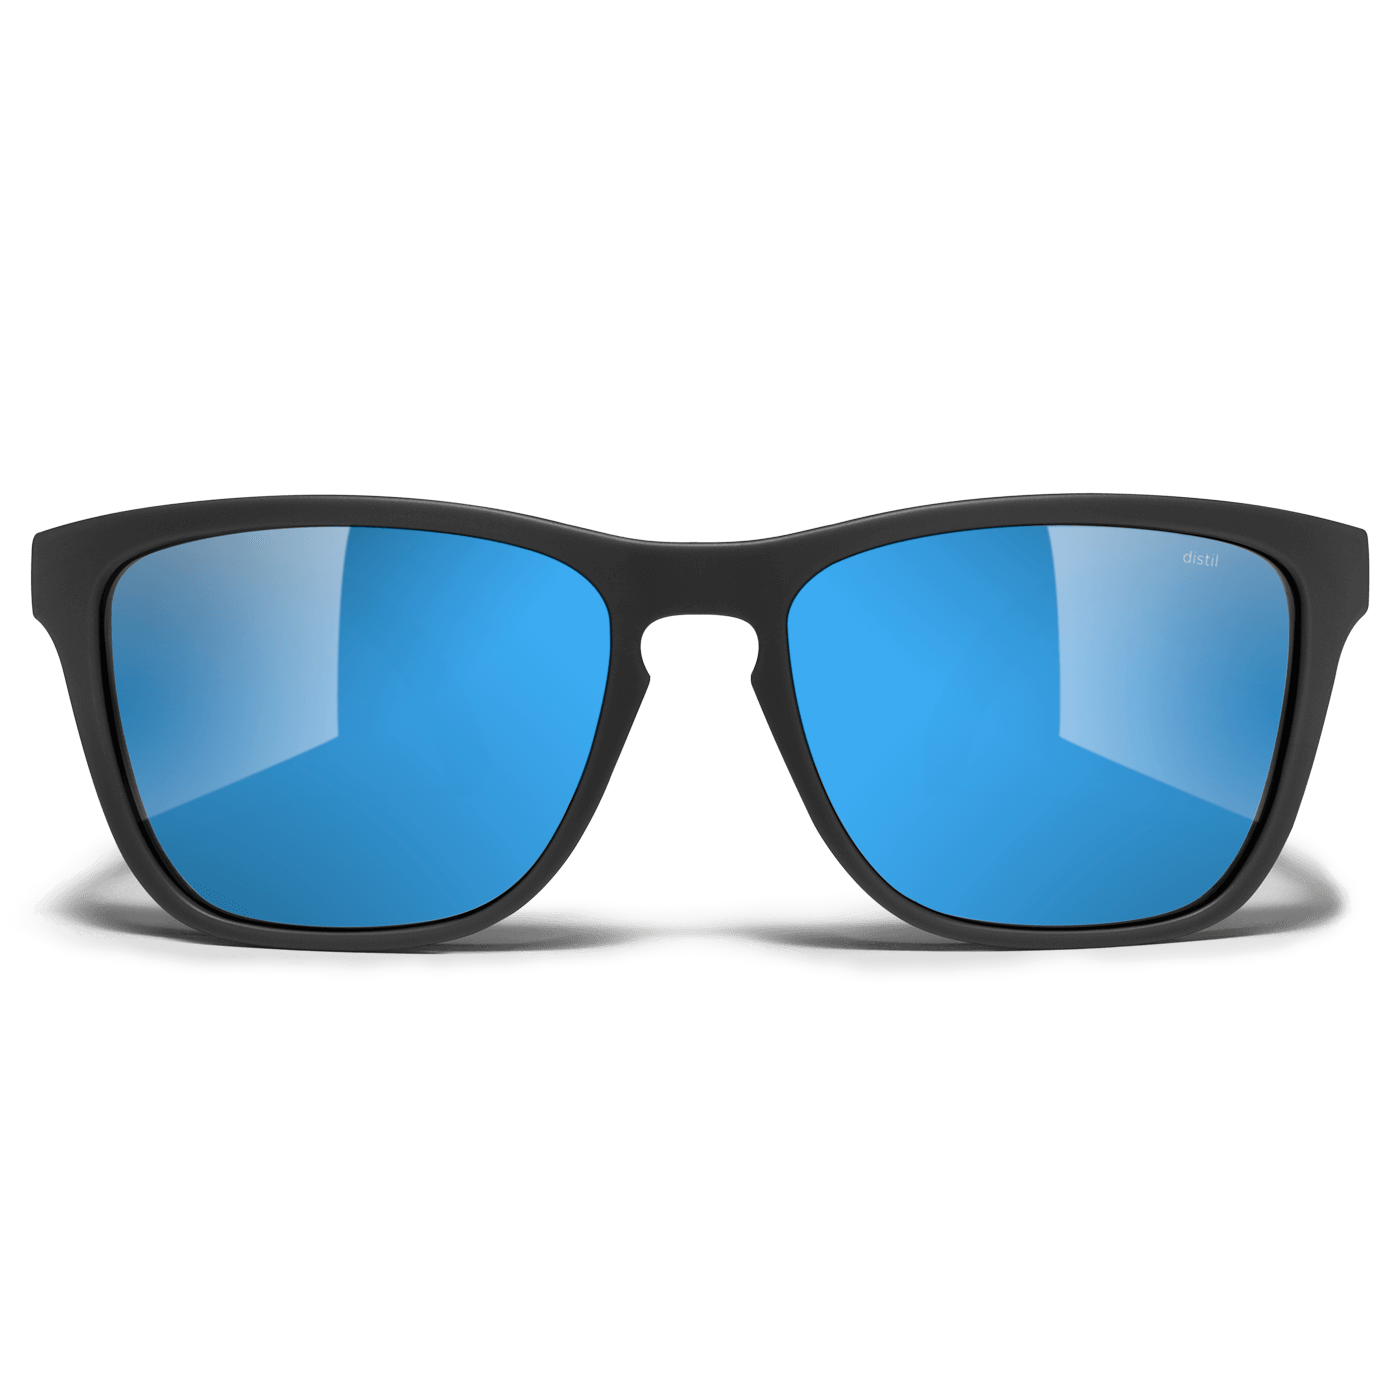 Distil Union Blue Mirror Polarized Lens for Folly MagLock Sunglasses